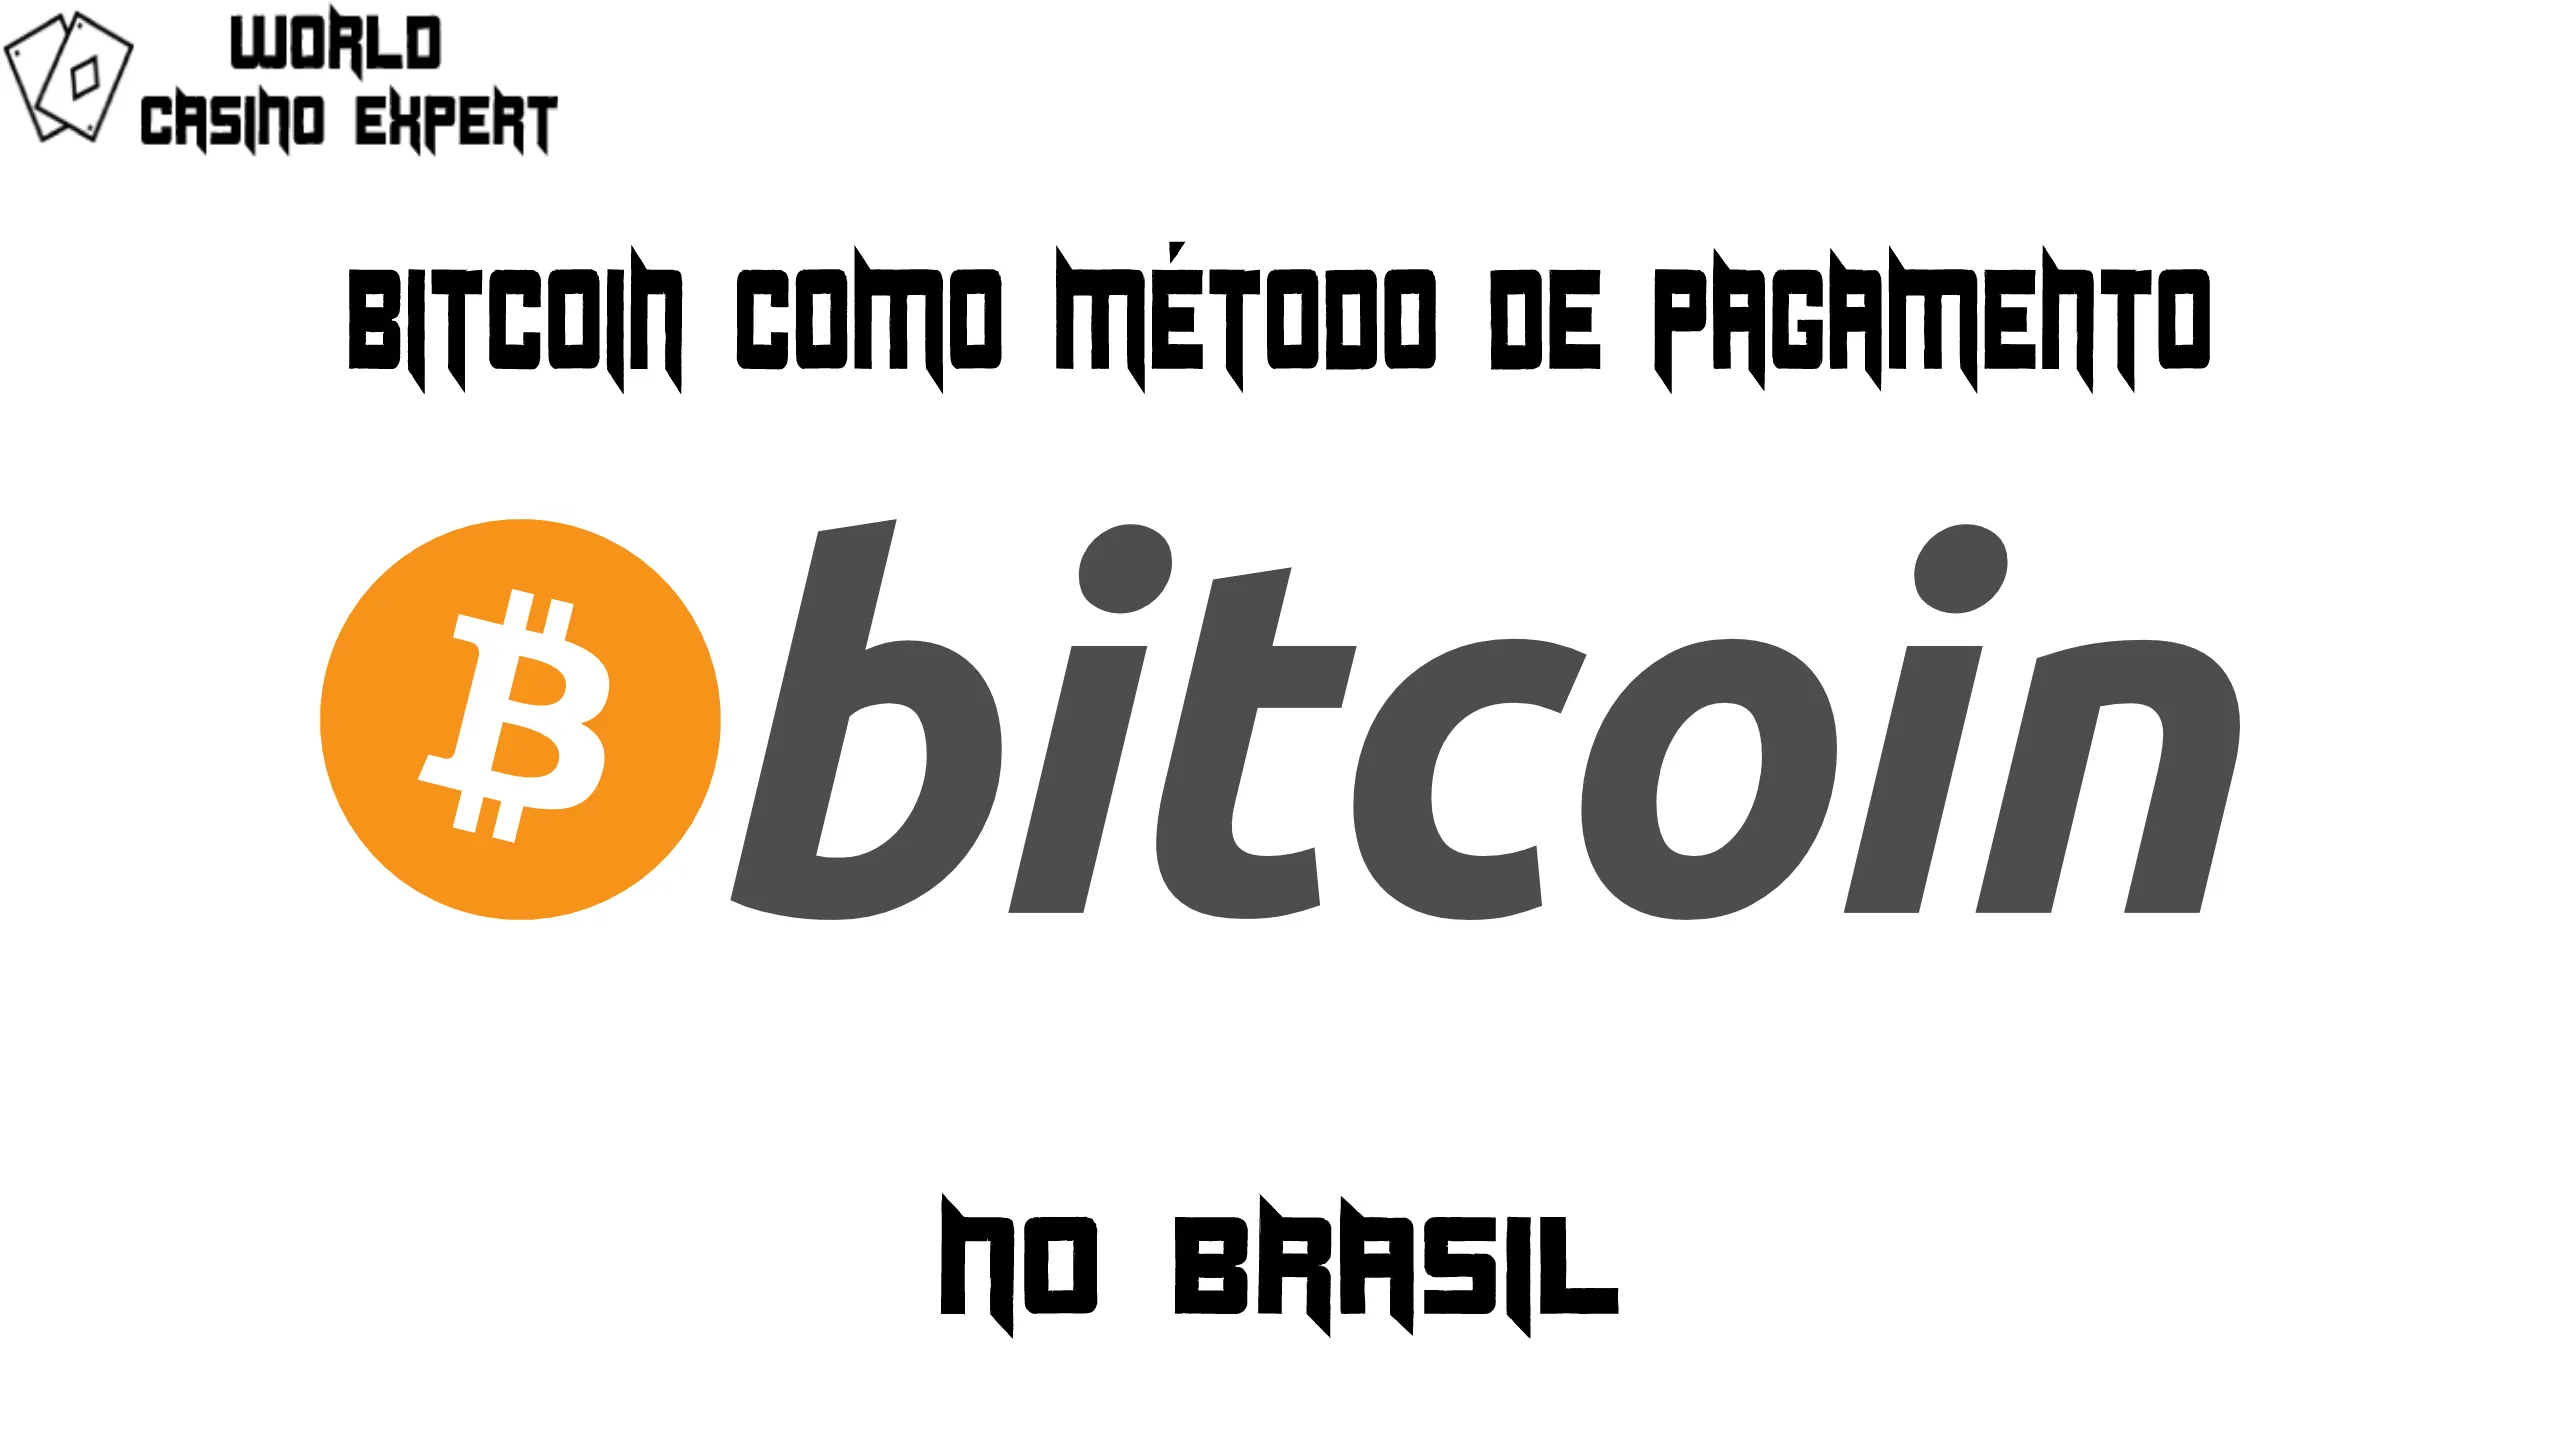 Bitcoin como método de pagamento | World Casino Expert Brasil